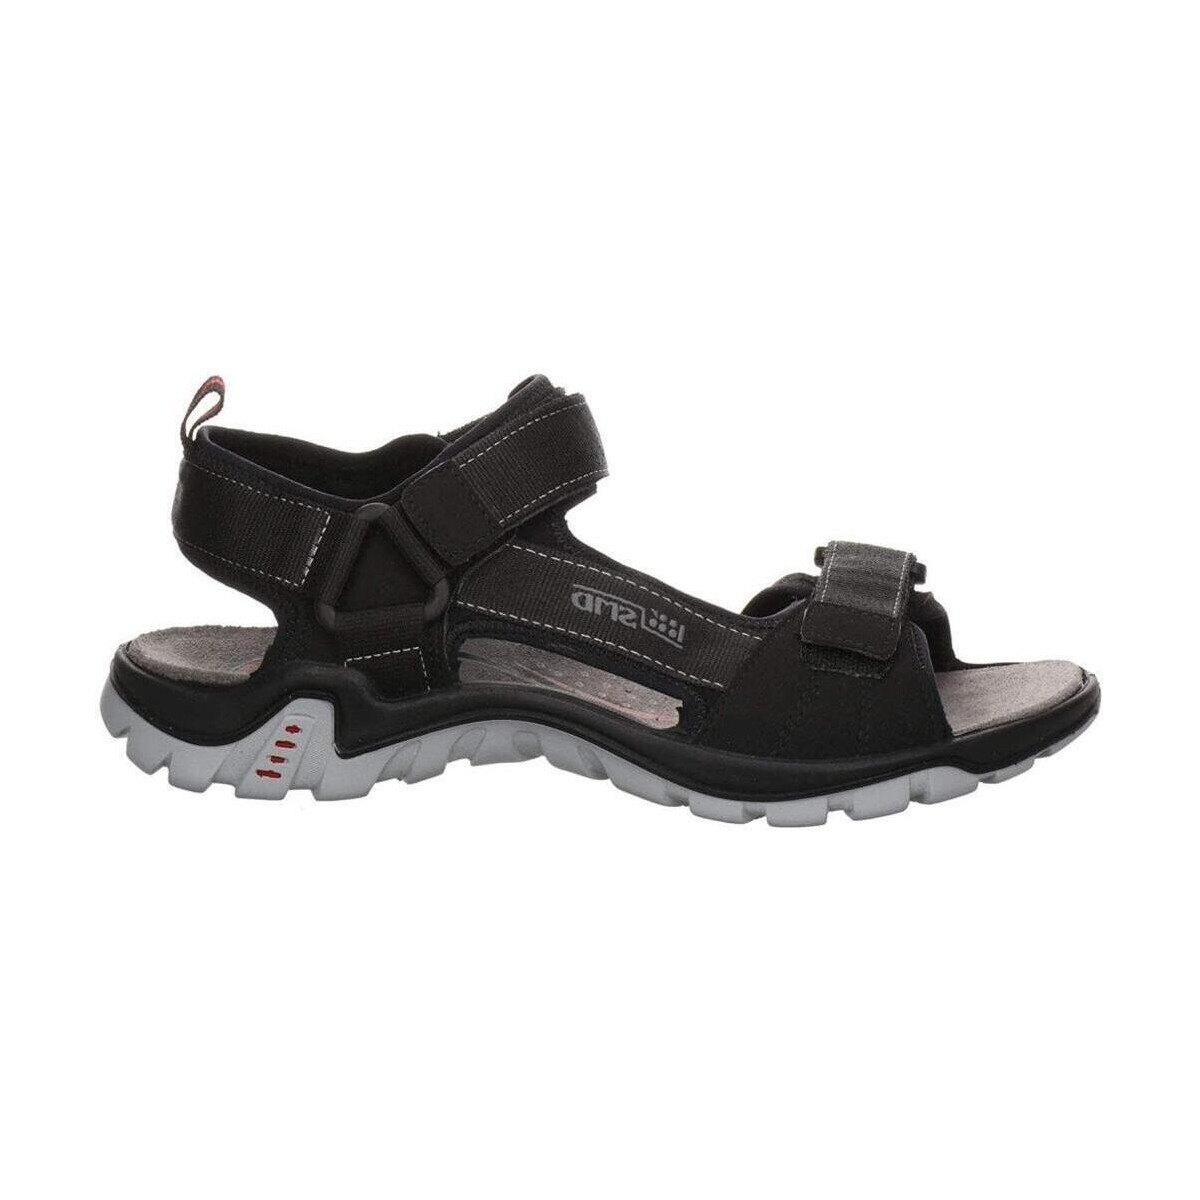 Topánky Muž Športové sandále Salamander  Čierna